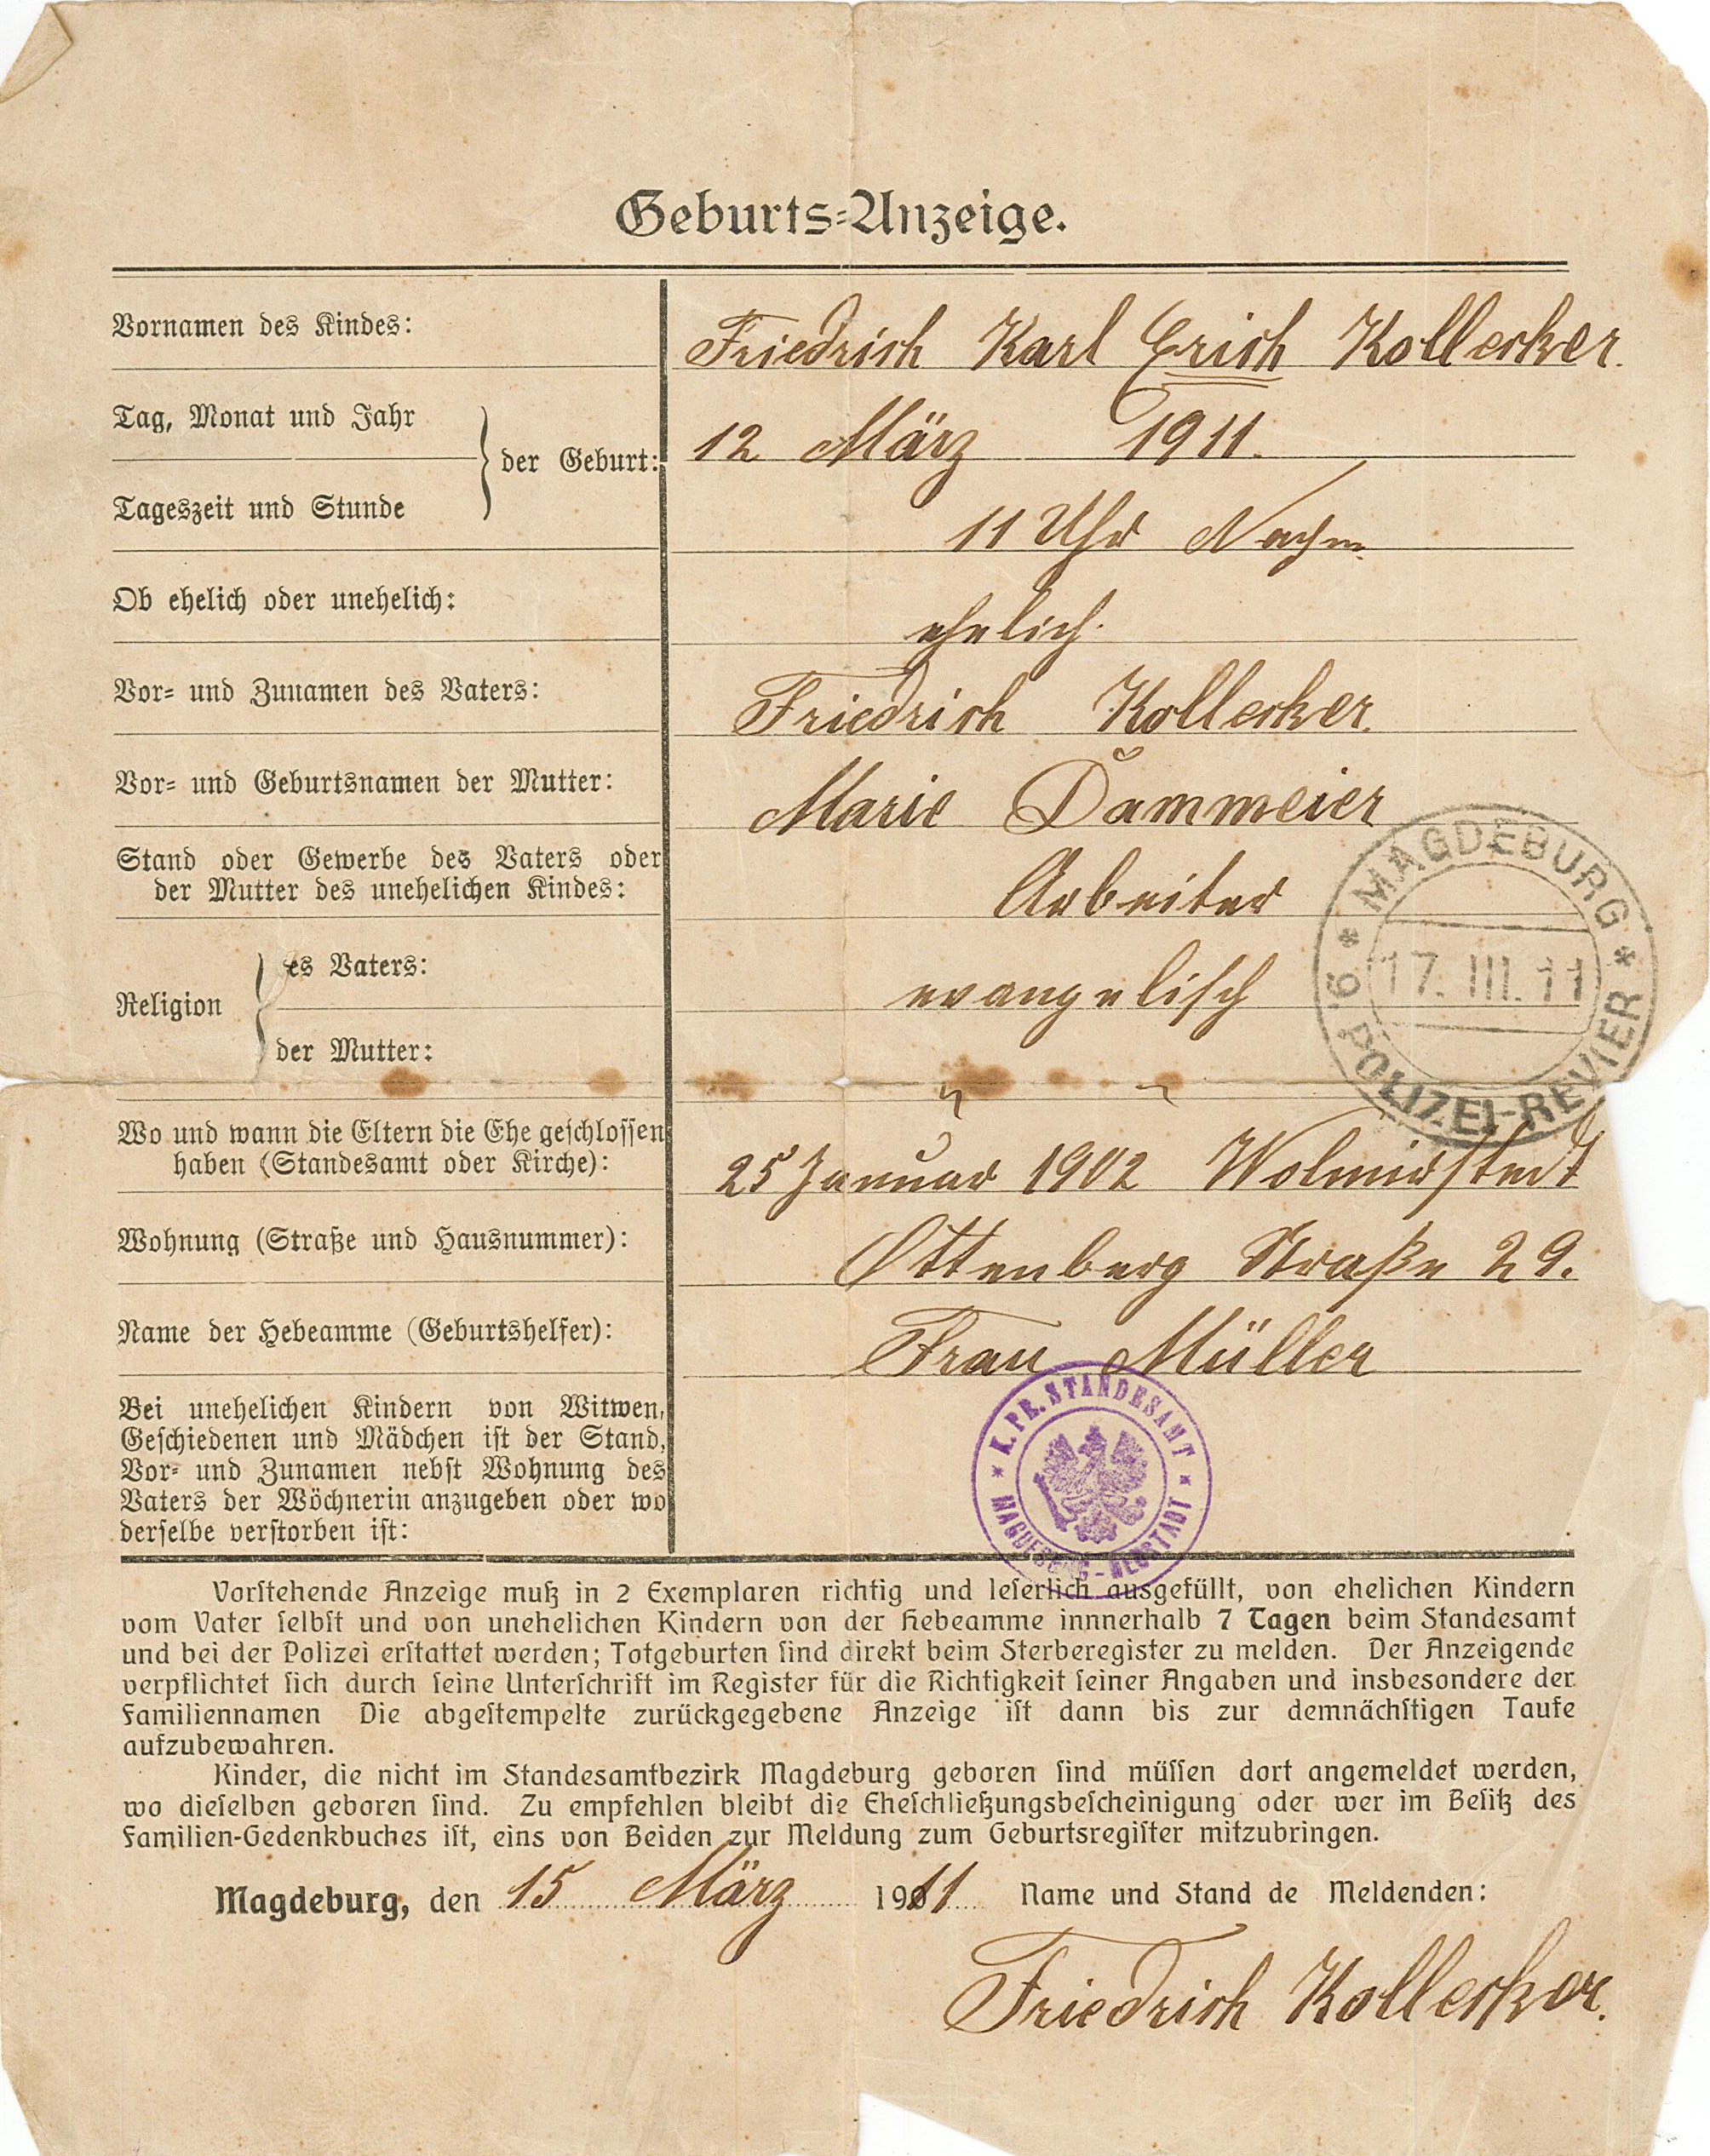 Geburtsanzeige für Erich Kollecker, 15. März 1911 (Museum Wolmirstedt RR-F)